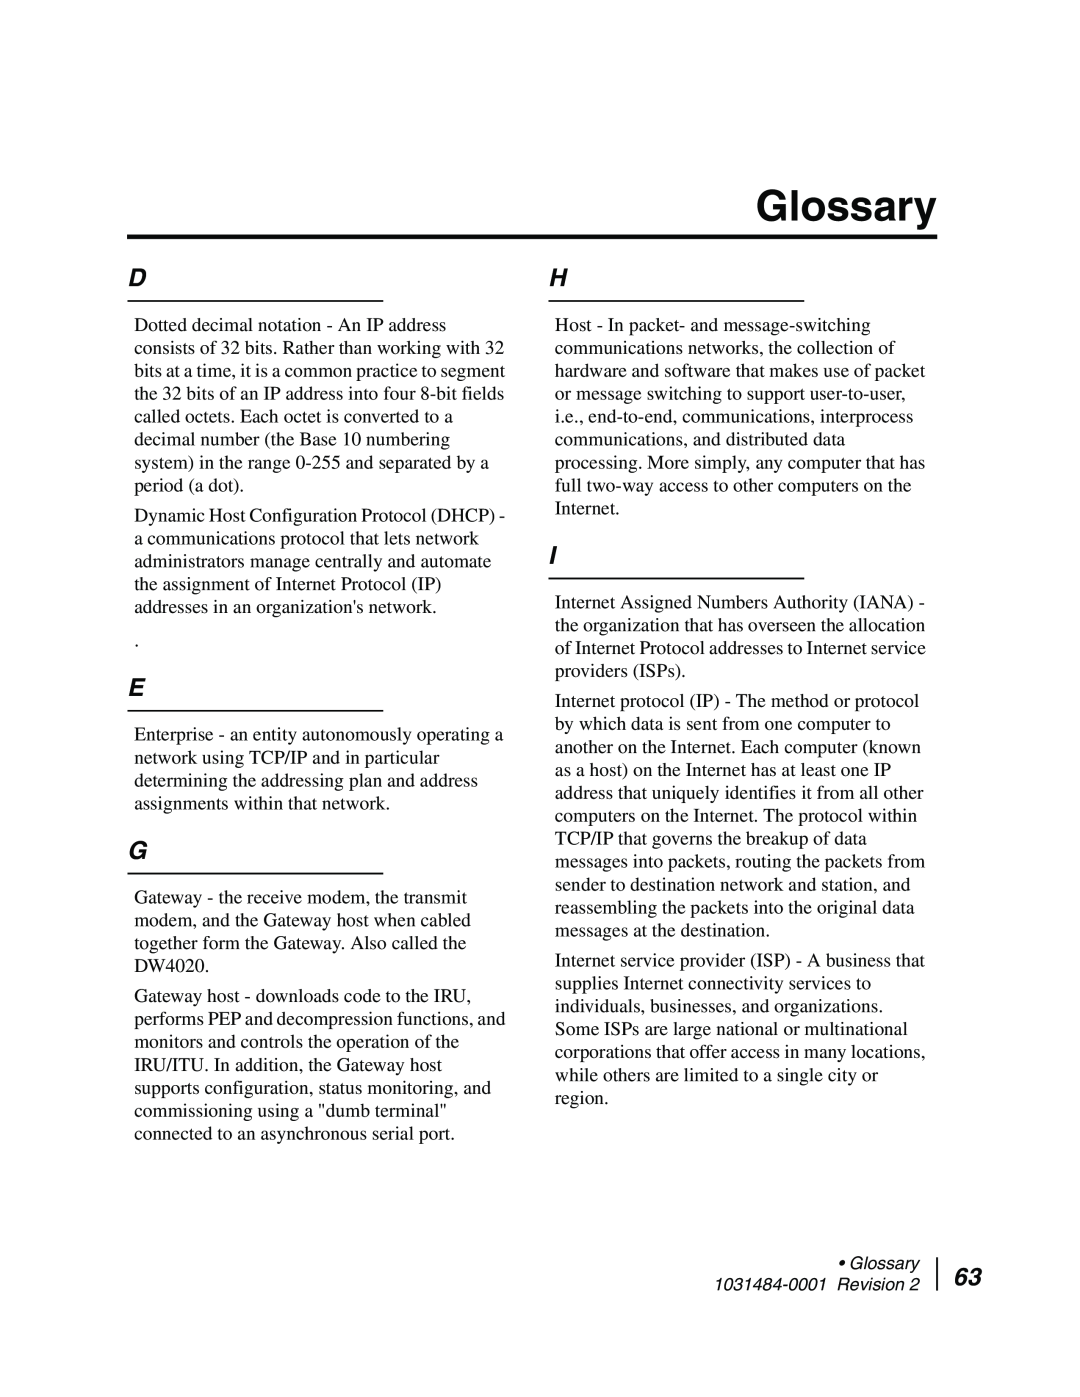 Hughes DW4020 manual Glossary 